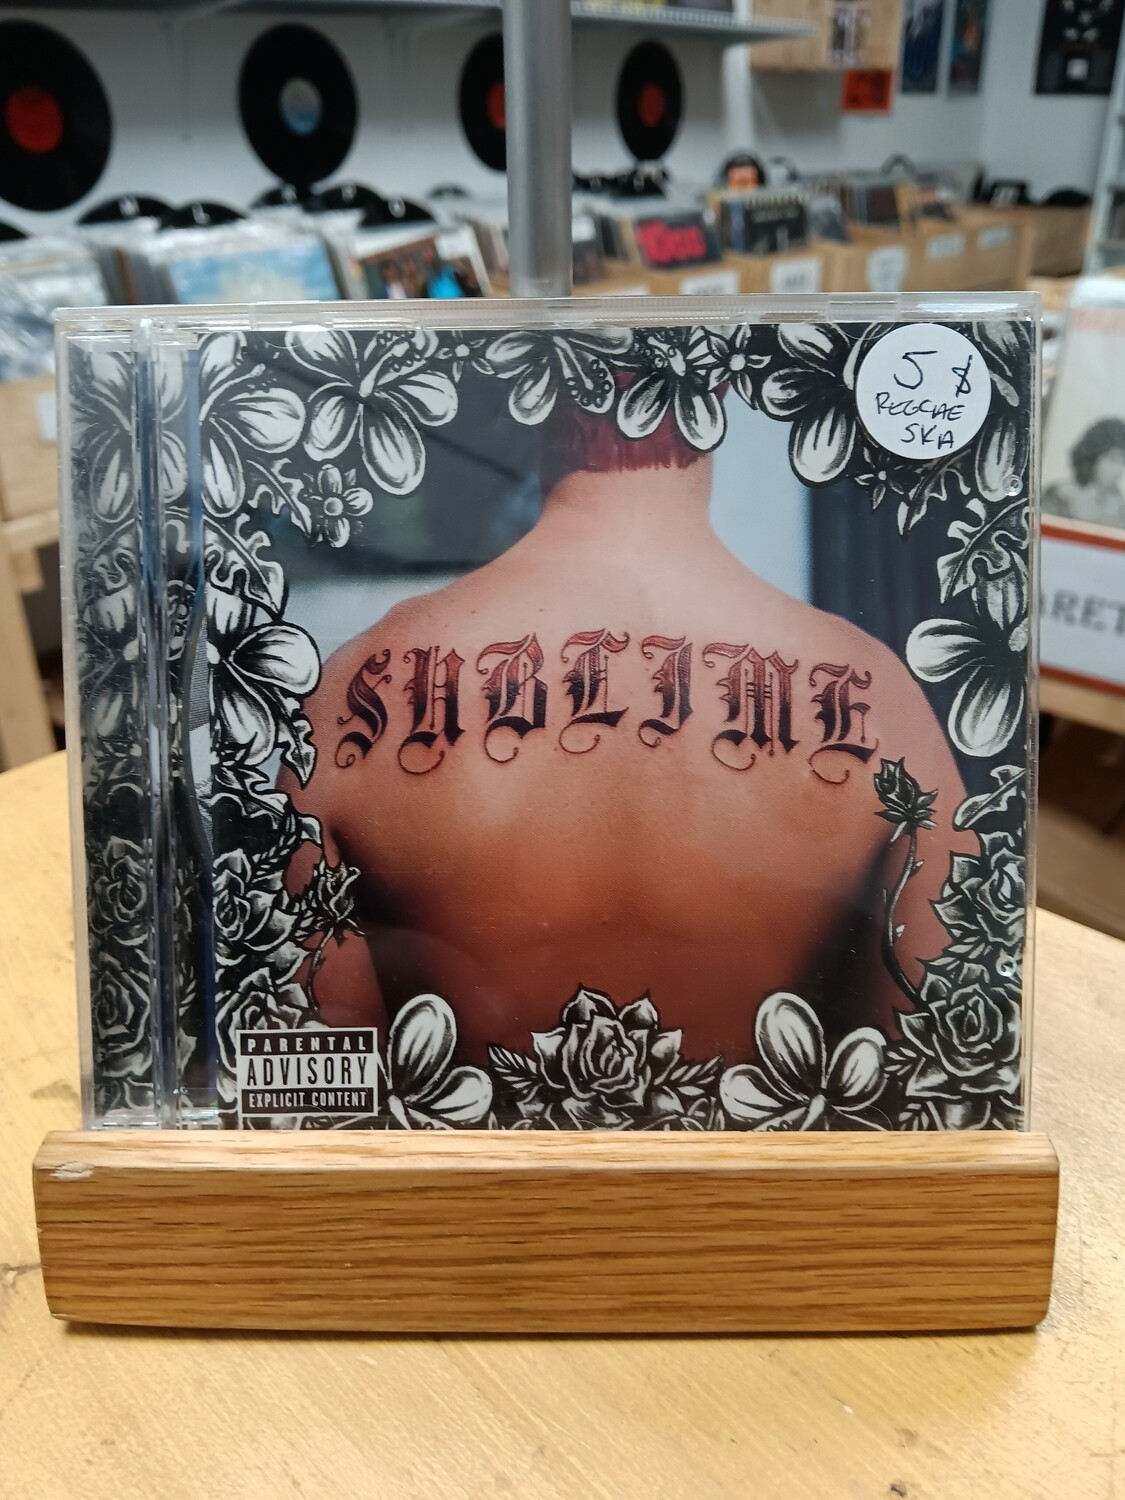 Sublime - Sublime (CD)